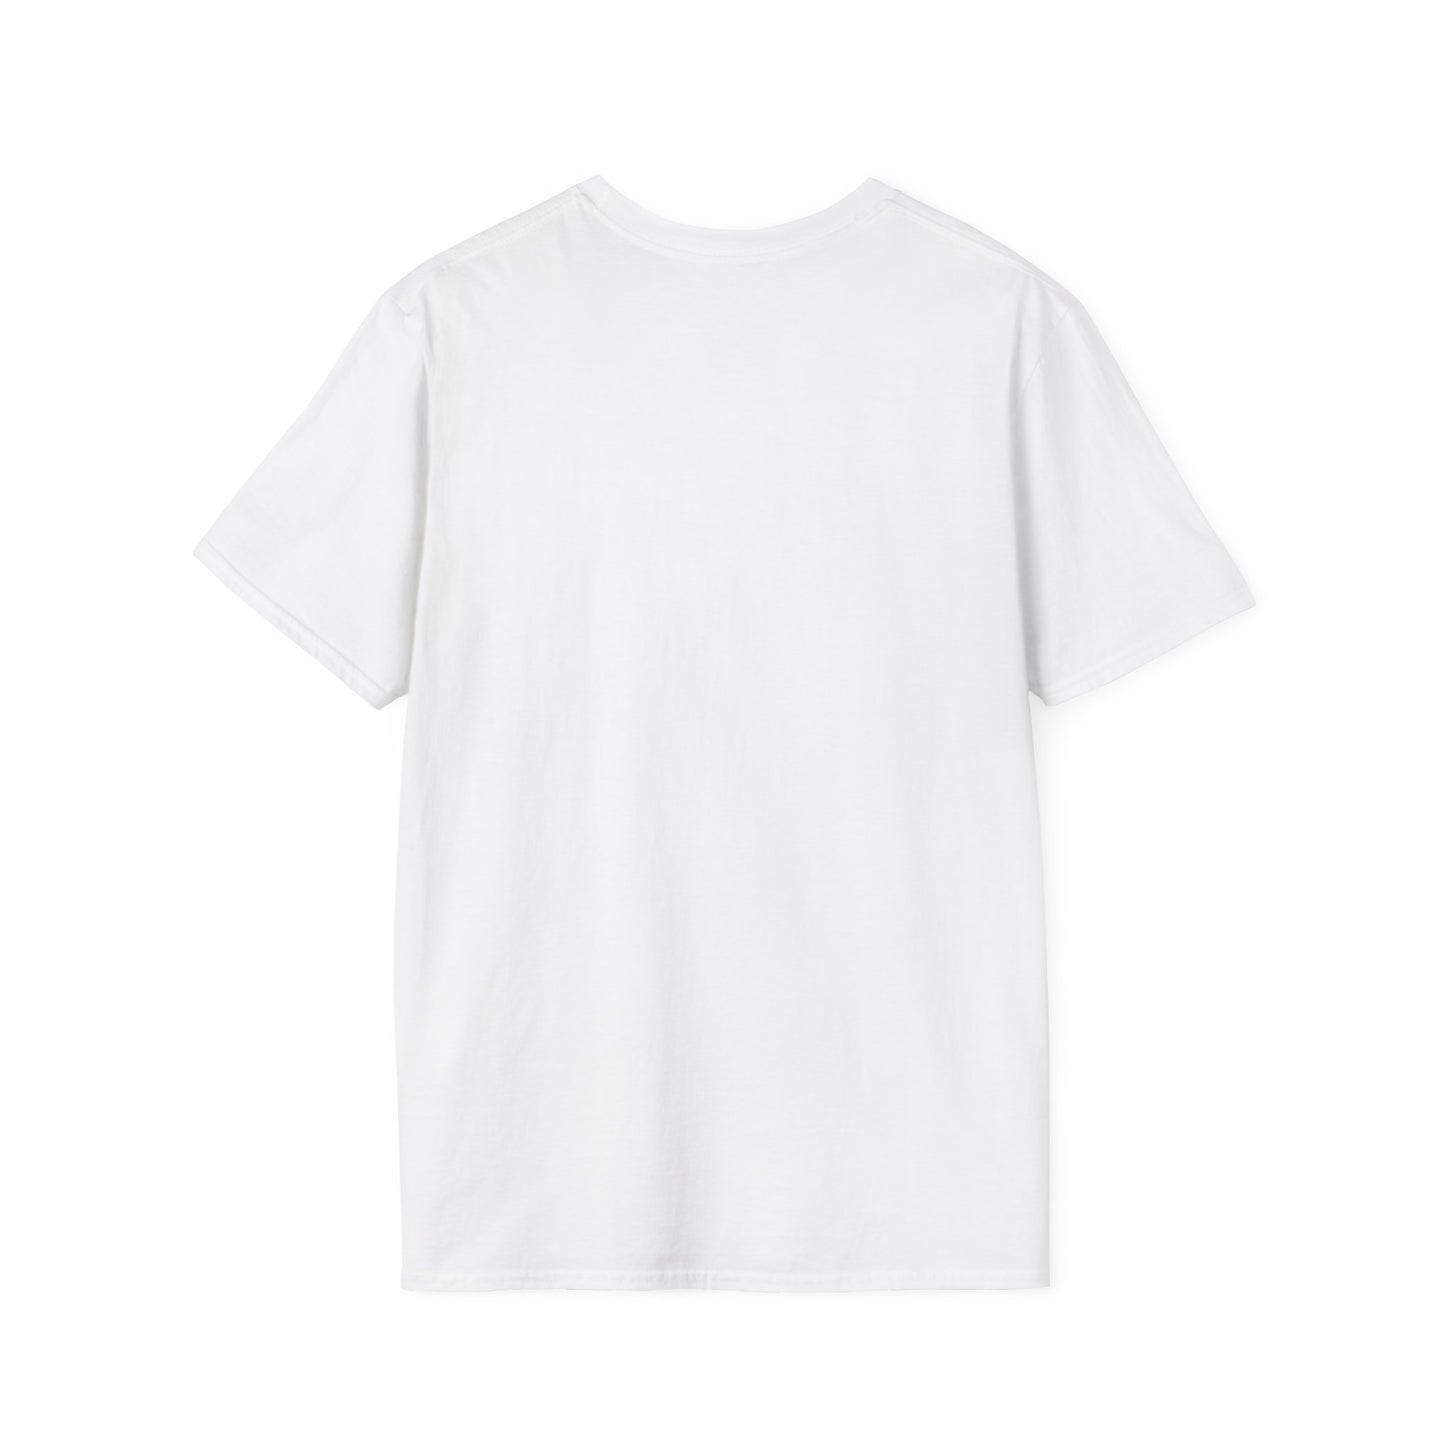 Evo X V3 Unisex Softstyle T-Shirt